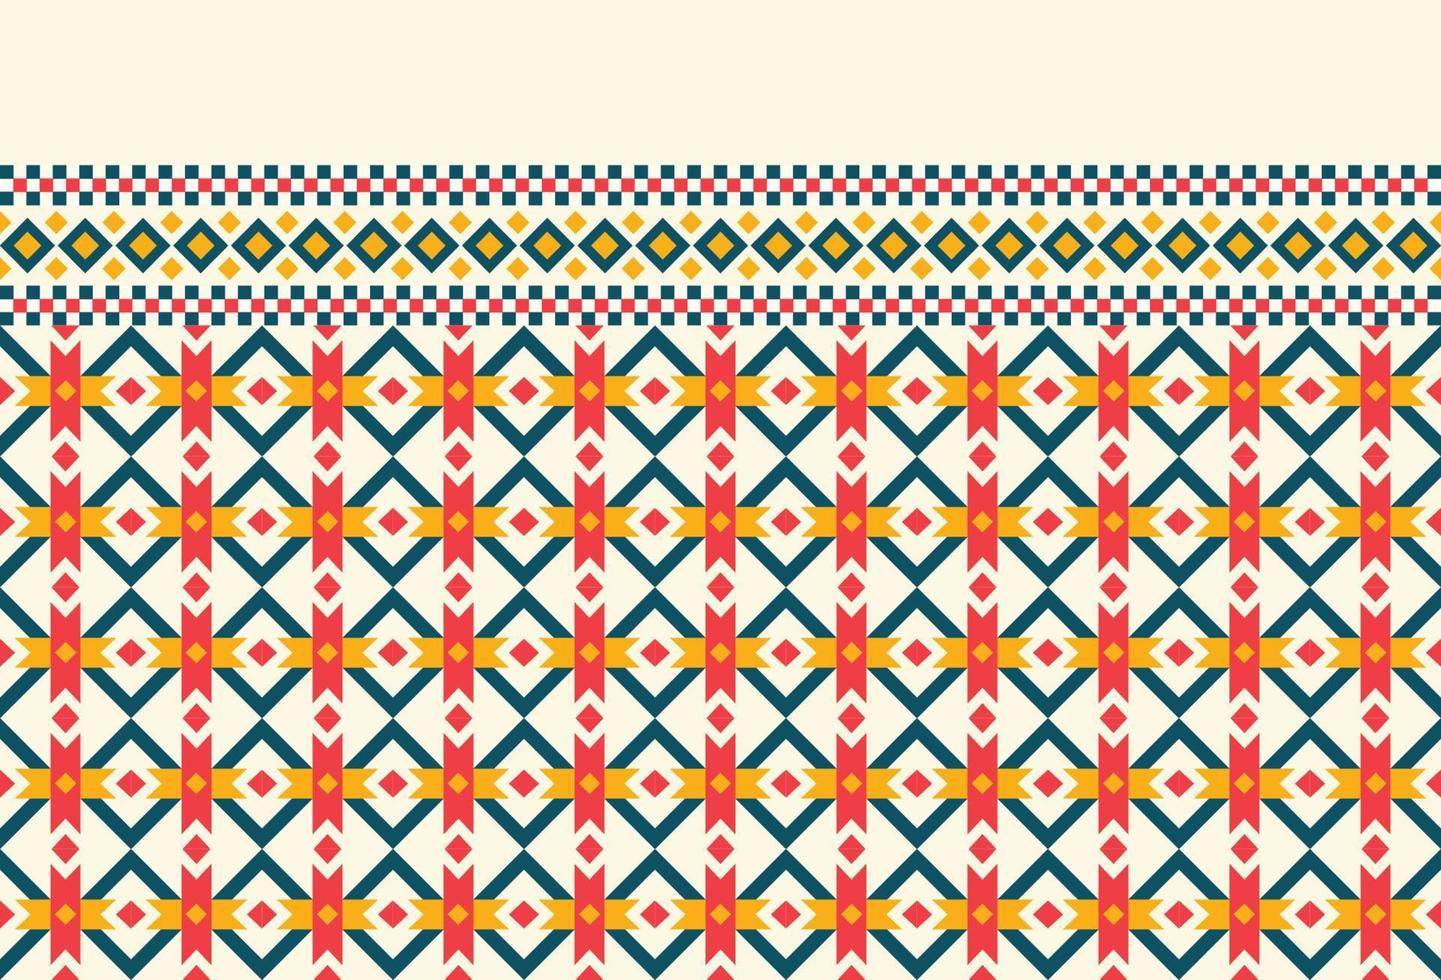 fond de motif oriental ethnique géométrique. conception pour la texture, l'emballage, les vêtements, le batik, le tissu, le papier peint et l'arrière-plan. motif de broderie de motif. vecteur